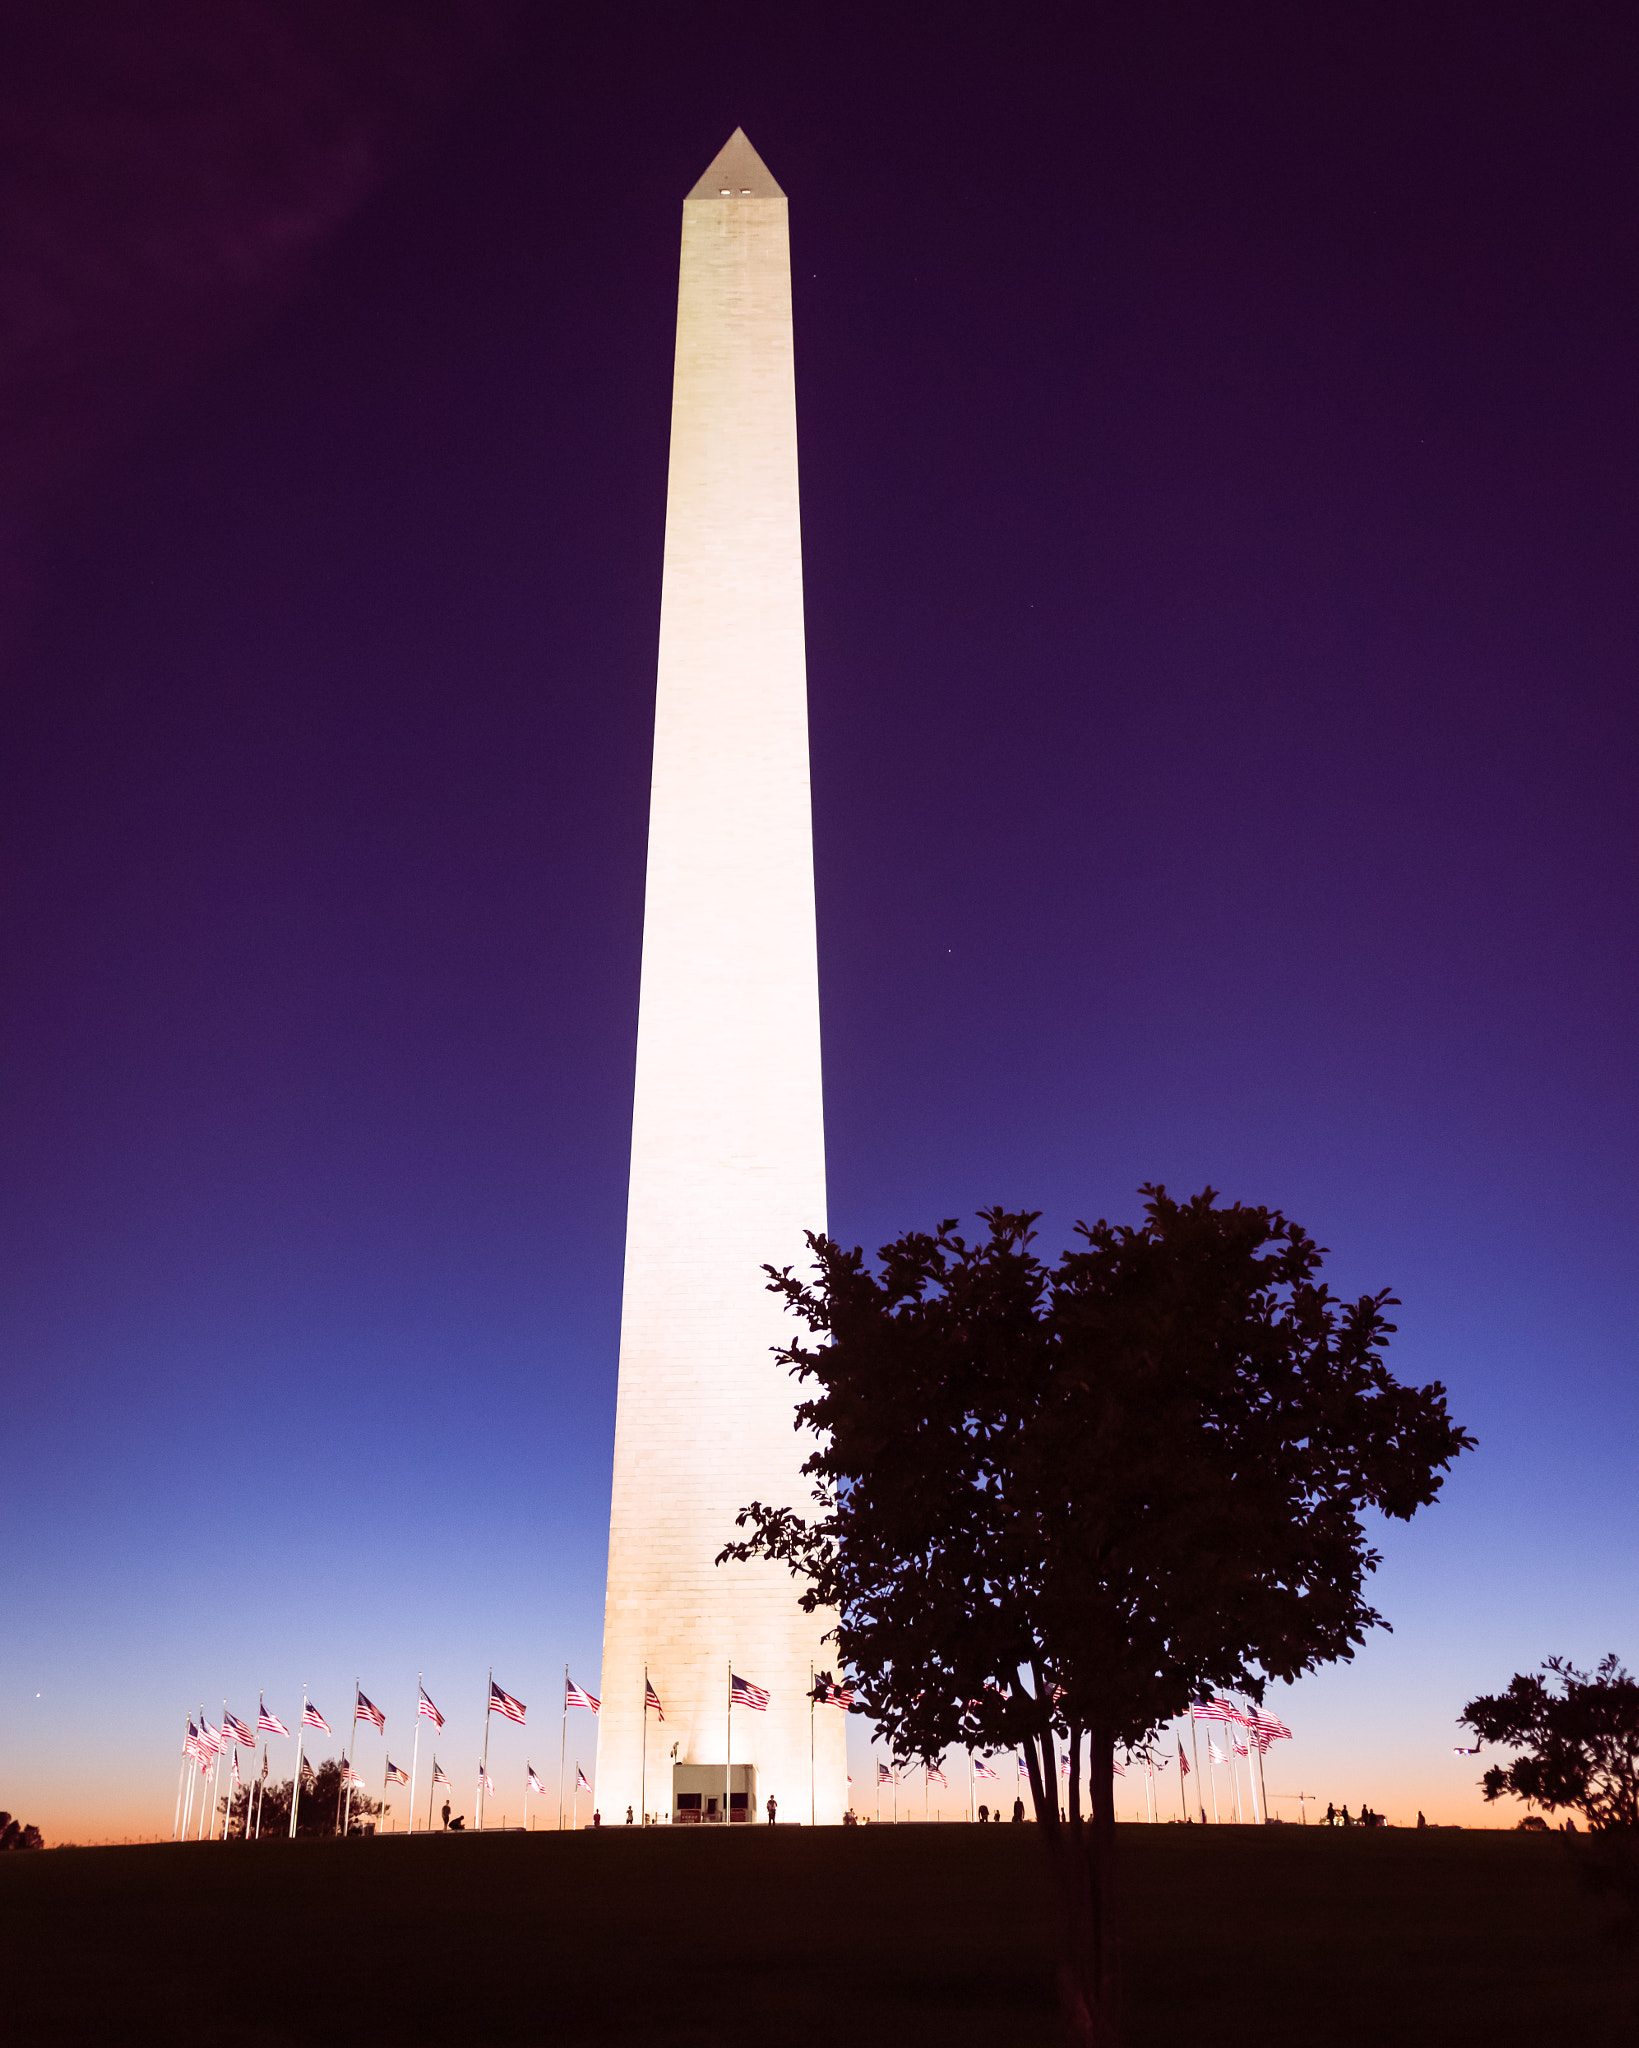 Pentax K-3 II sample photo. Washington monument at dusk photography